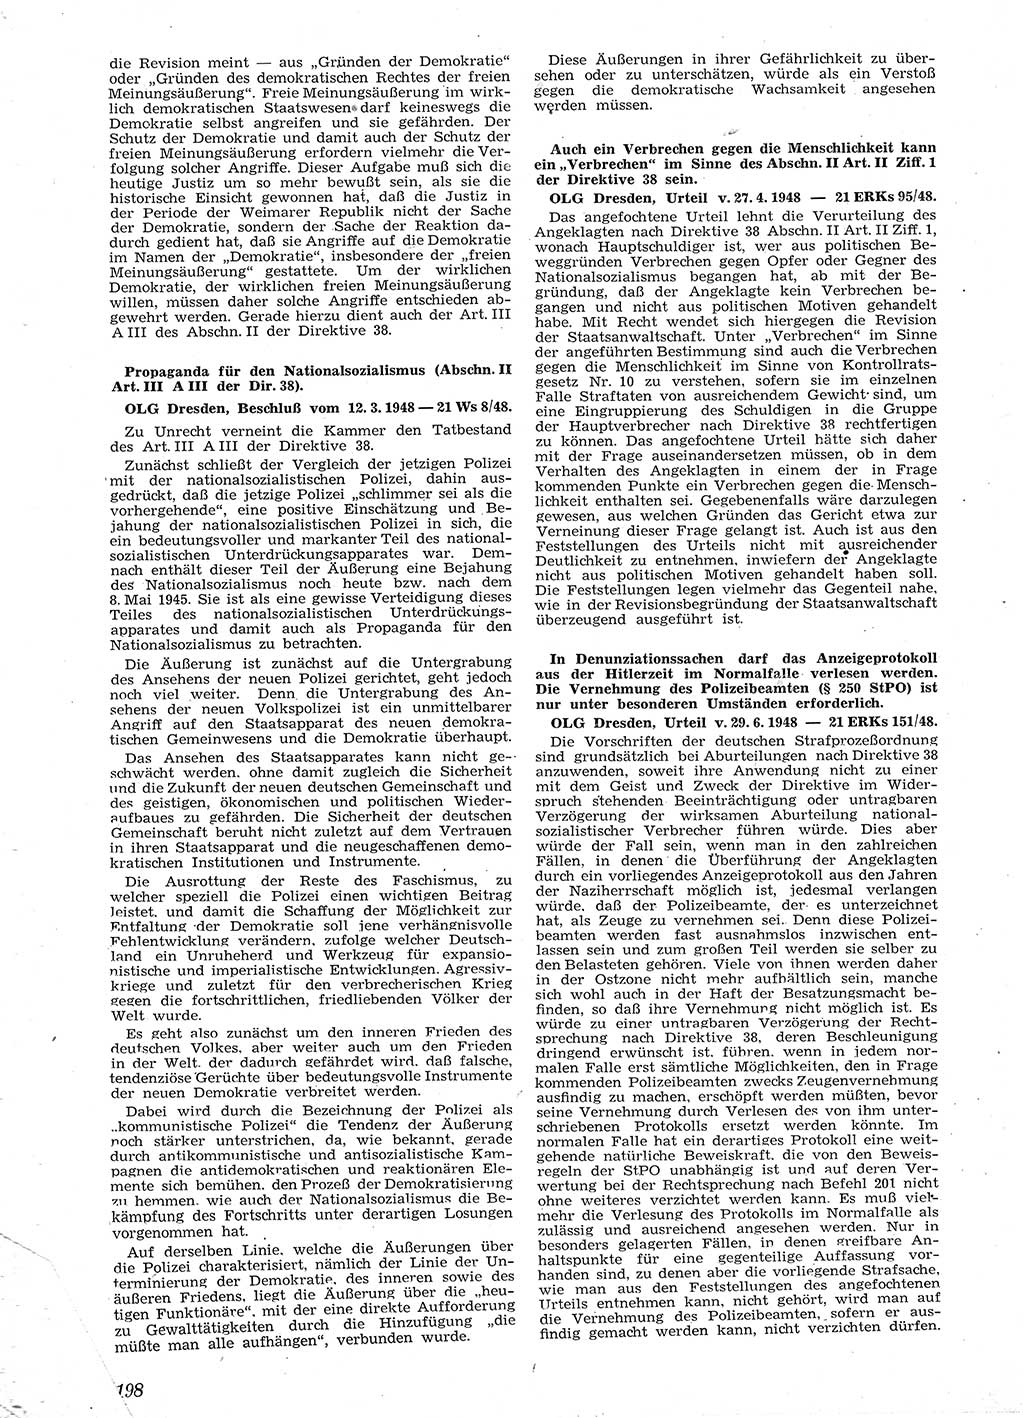 Neue Justiz (NJ), Zeitschrift für Recht und Rechtswissenschaft [Sowjetische Besatzungszone (SBZ) Deutschland], 2. Jahrgang 1948, Seite 198 (NJ SBZ Dtl. 1948, S. 198)